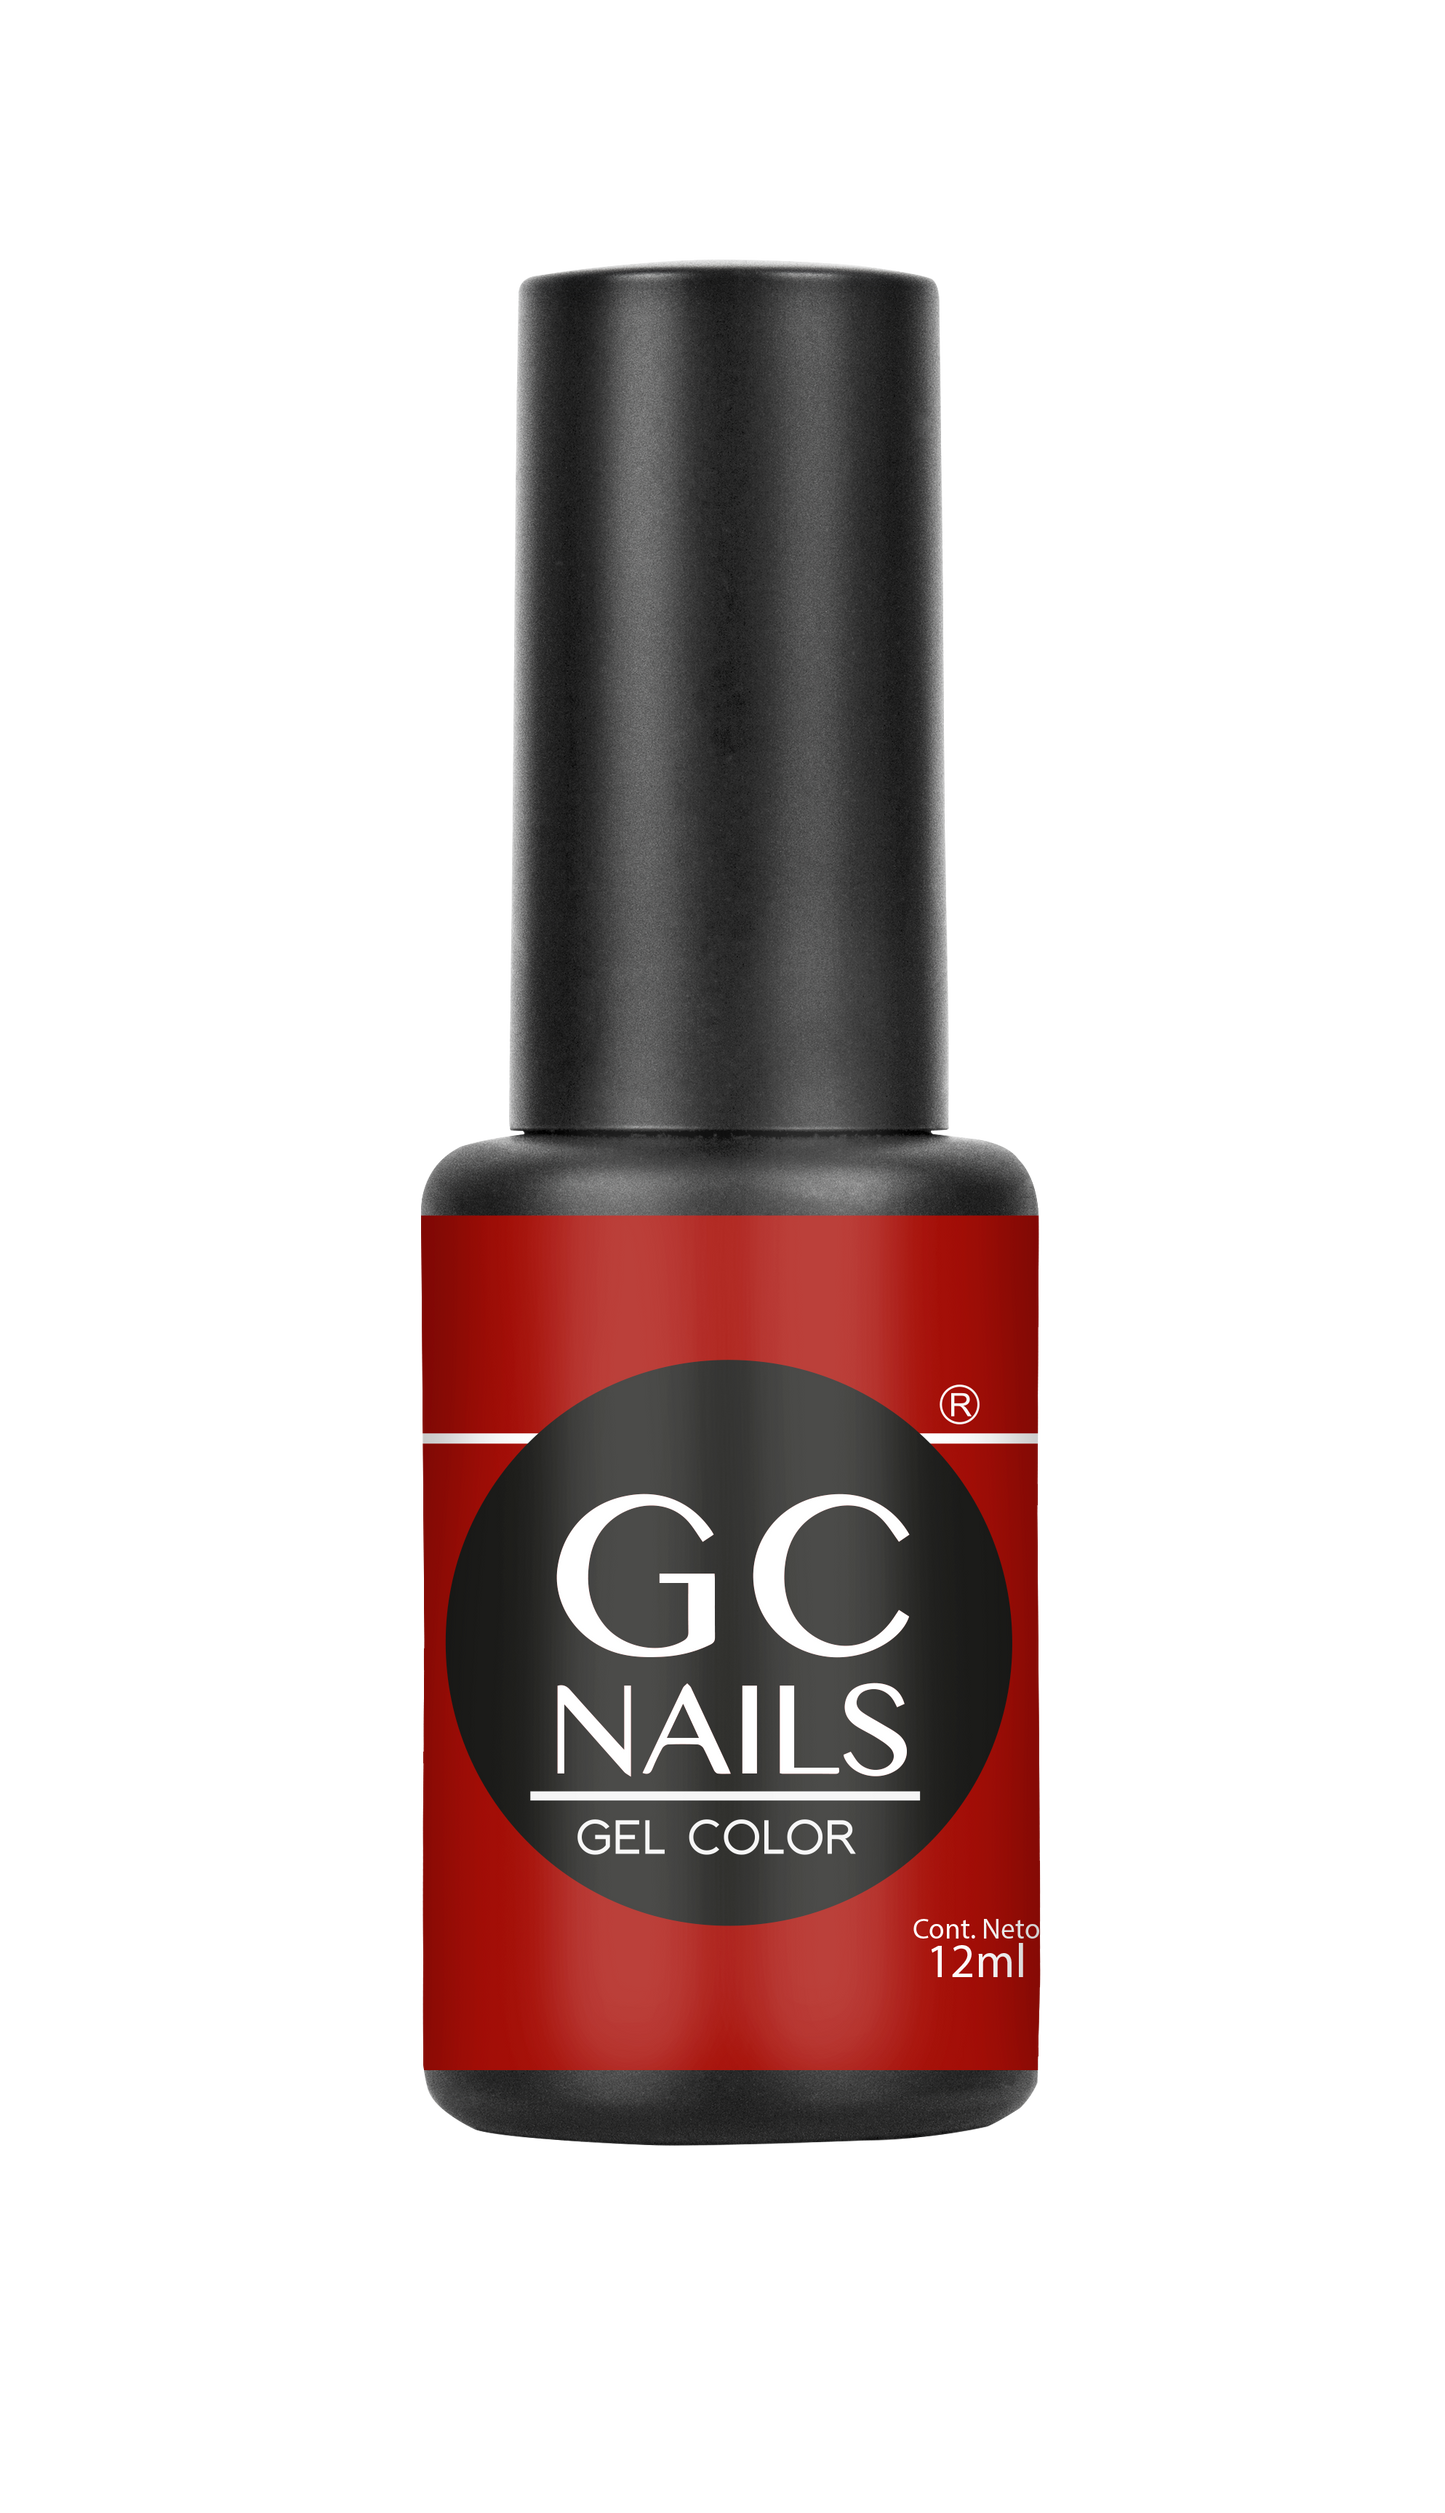 GC nails bel-color 12ml CABARET 84